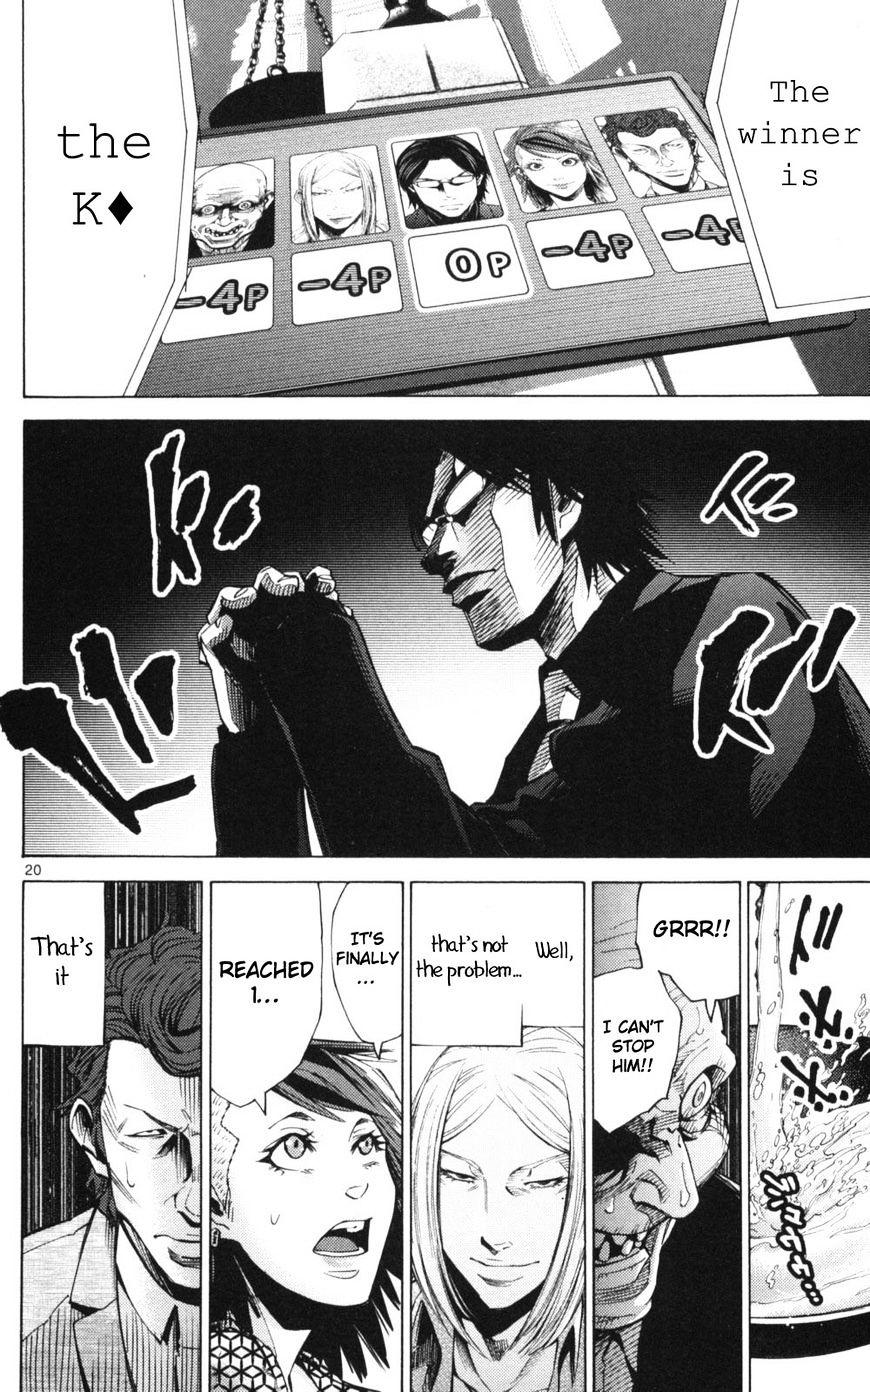 Imawa No Kuni No Alice Chapter 51.2 : Side Story 6 - King Of Diamonds (2) page 20 - Mangakakalot